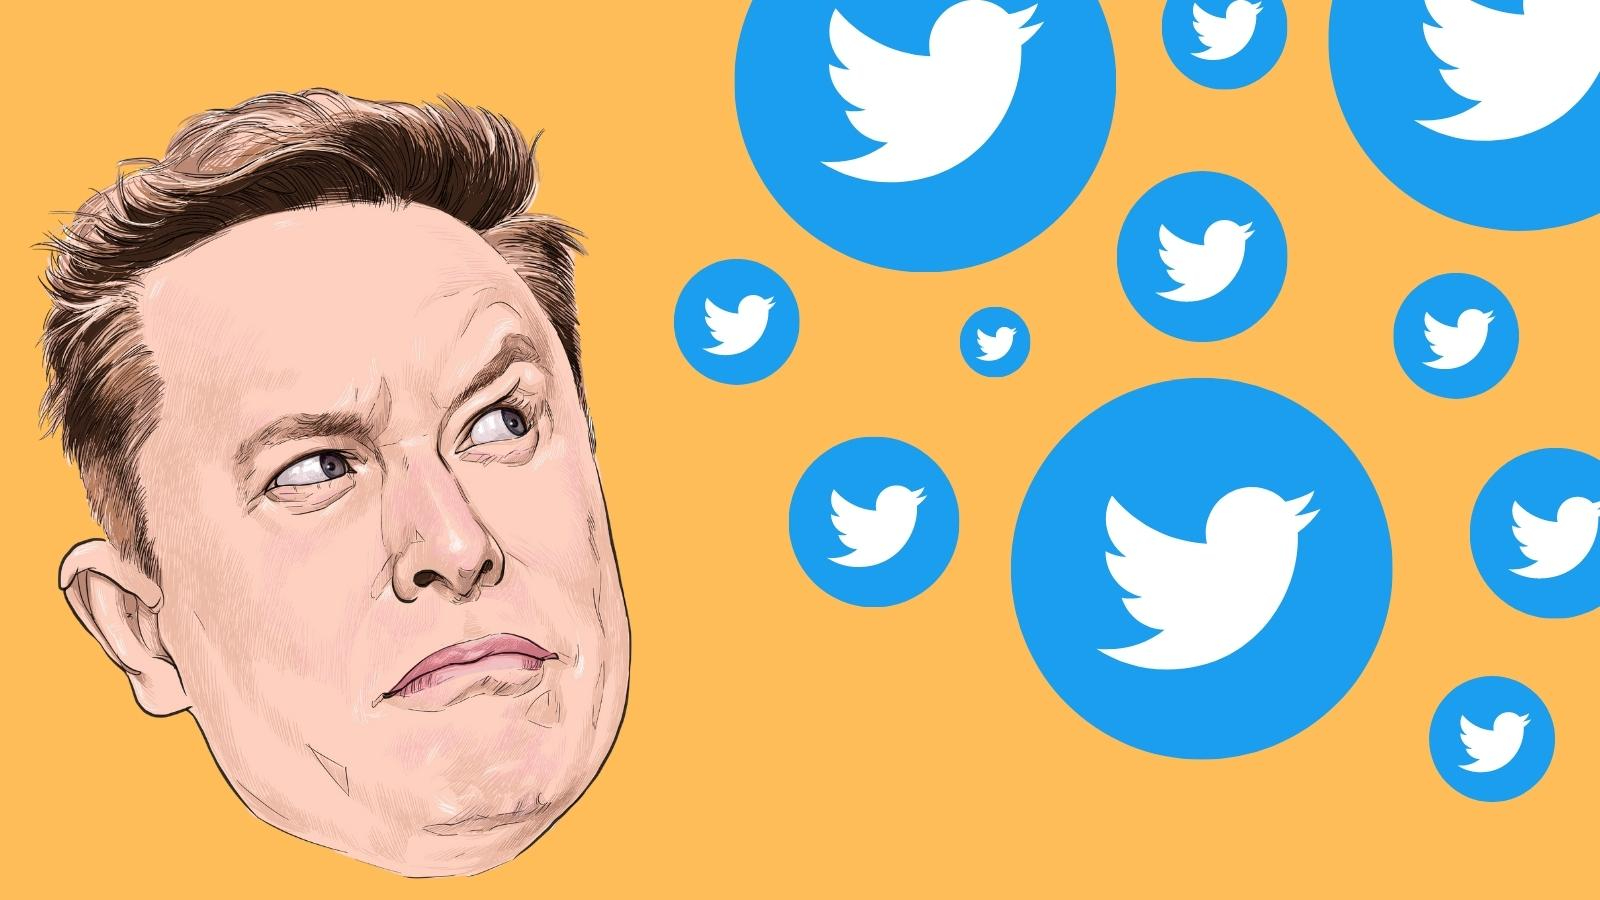 Une illustration d'Elon Musk dessinée par thongyhod regardant avec perplexité des logos Twitter qui tombent.